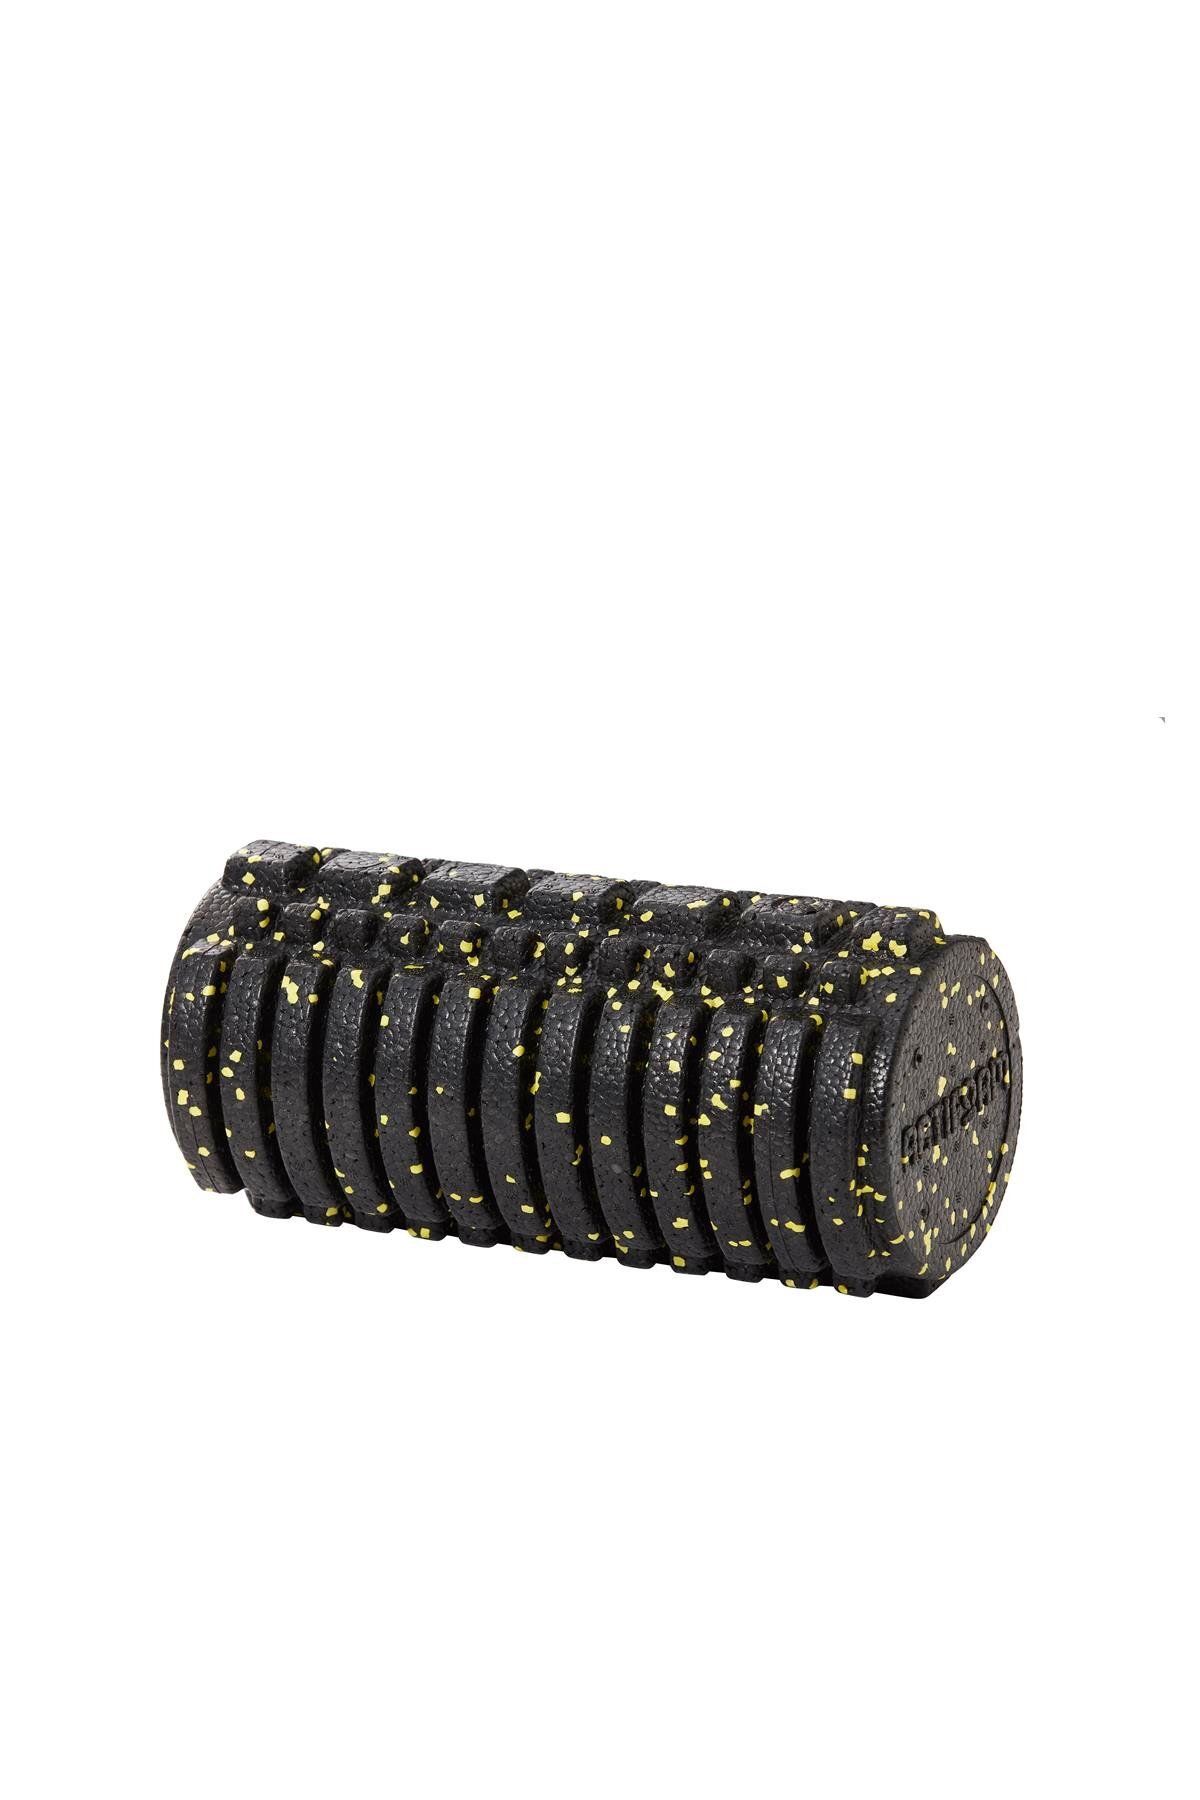 Actifoam Tırtıklı Masaj Rulosu - Trigger Point Foam Roller 30 cm